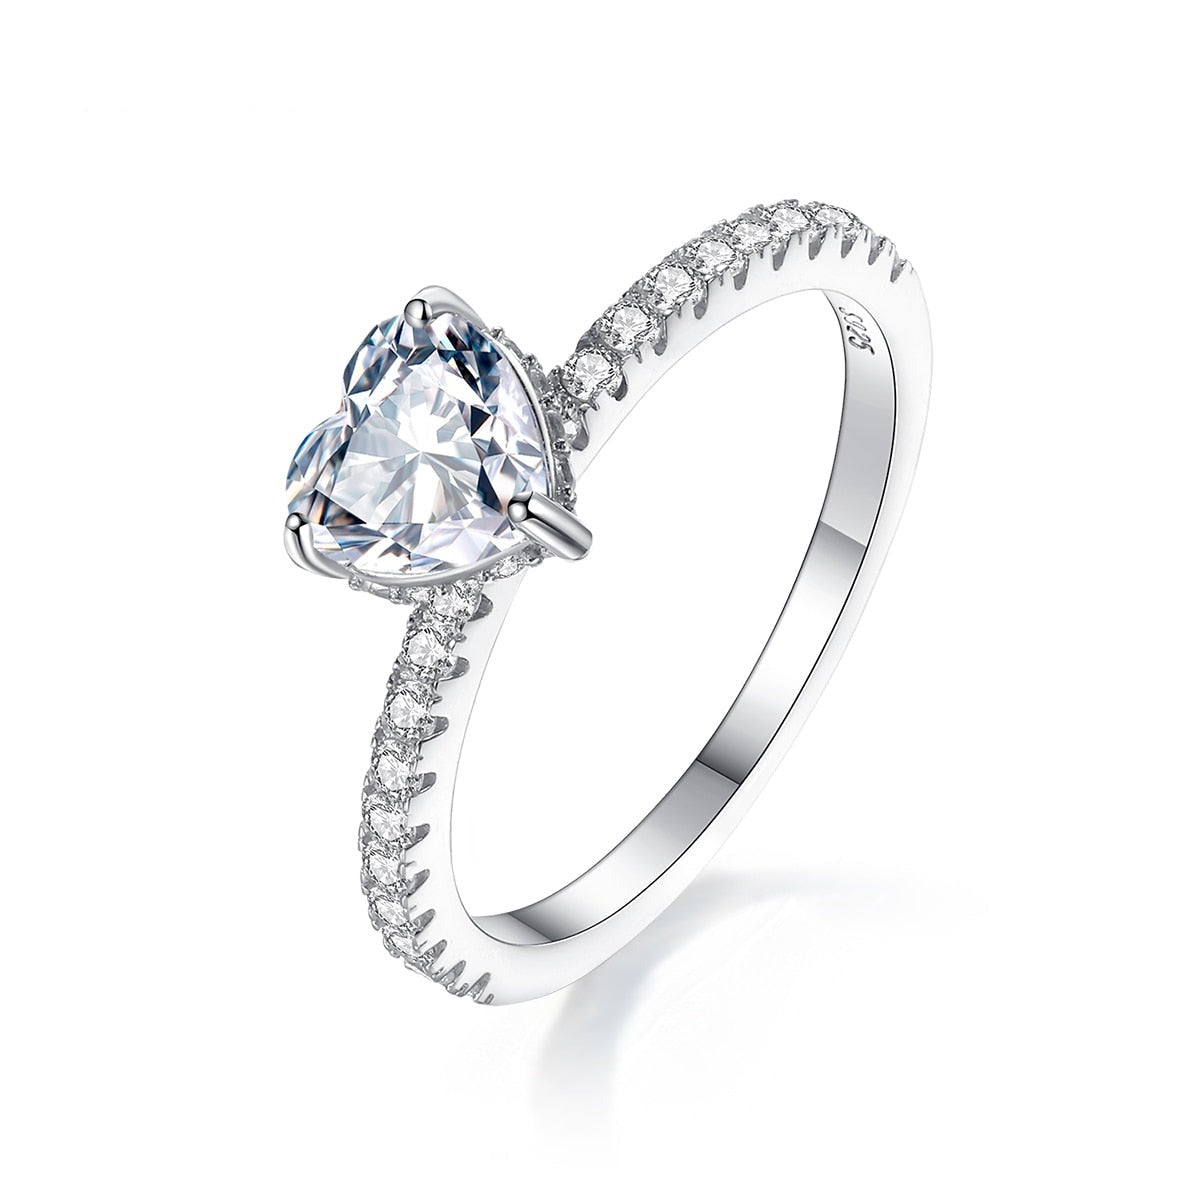 1 Carat Heart Shape Moissanite Diamond Engagement Ring Sterling Silver